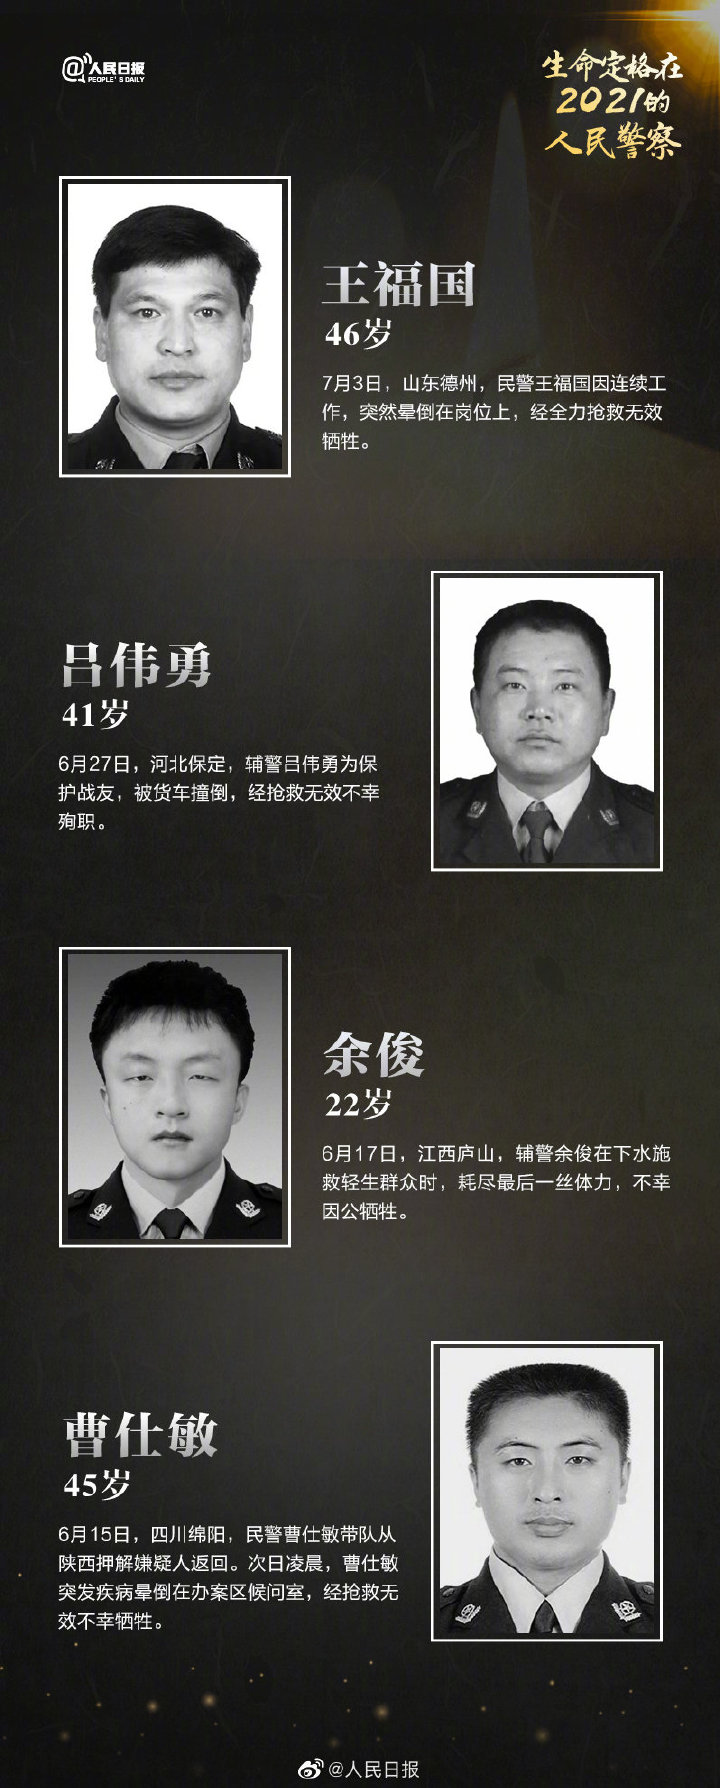 12月4日,云南缉毒警蔡晓东在抓捕毒贩时,与持枪毒贩殊死搏斗,壮烈牺牲